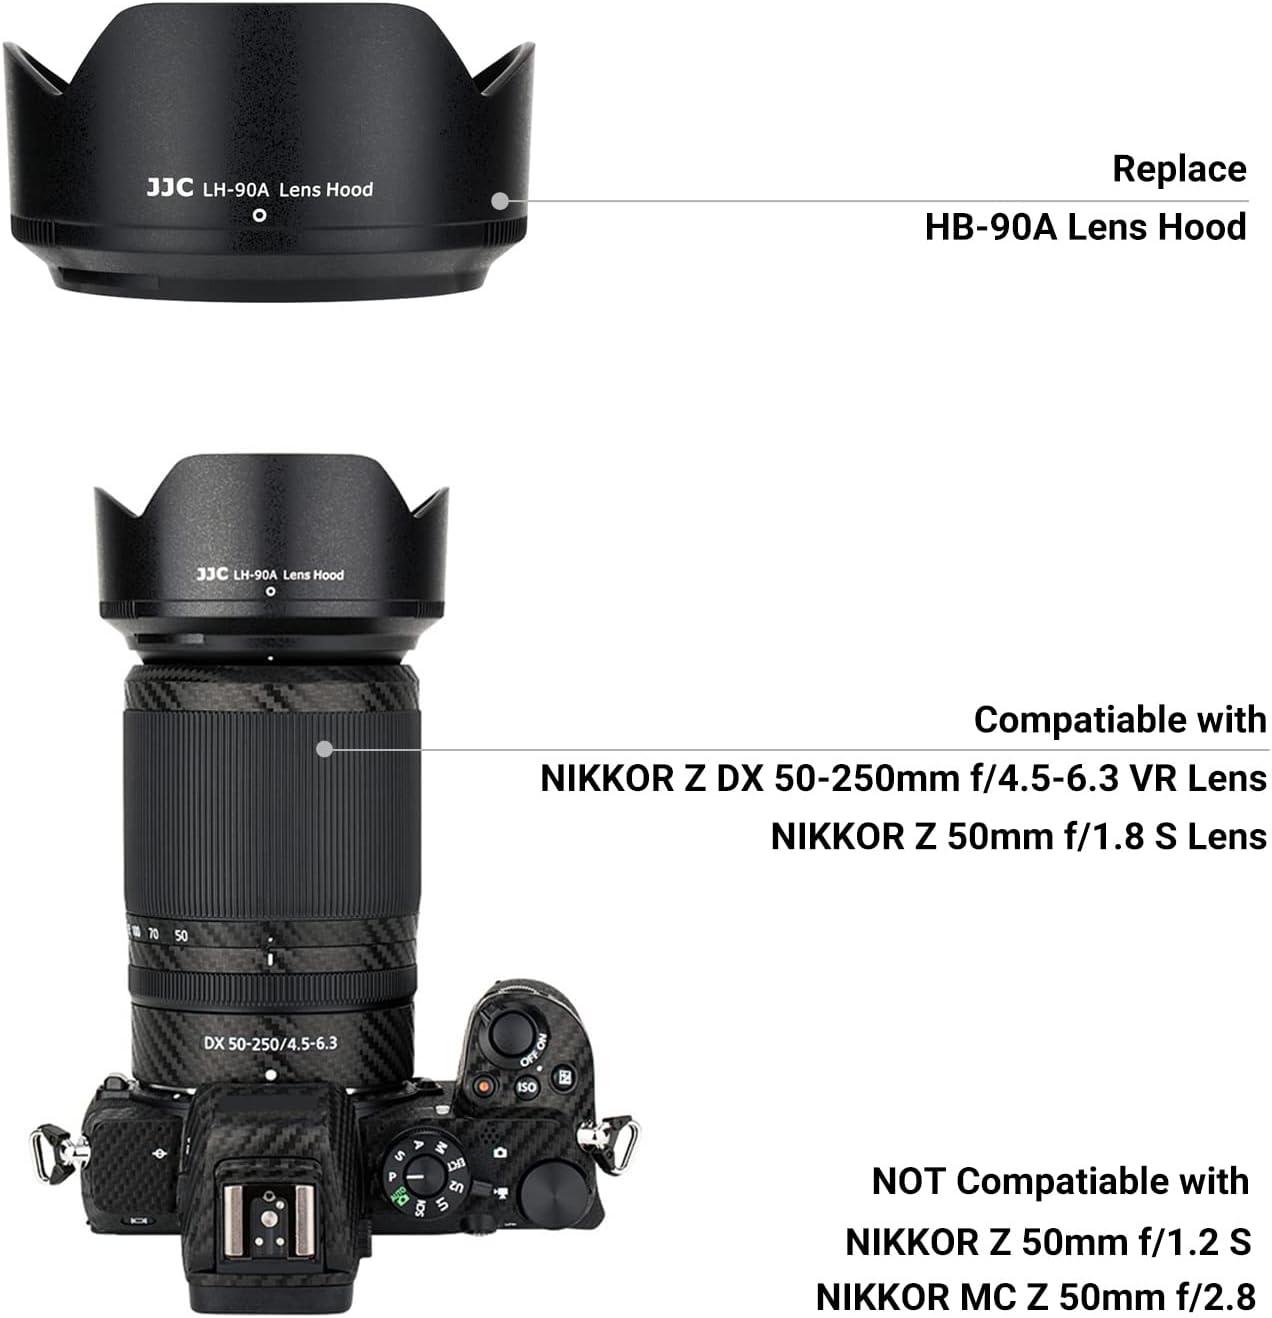 Lens Hood for NIKKOR Z DX 50-250mm F4.5-6.3 VR, NIKKOR Z 50mm f